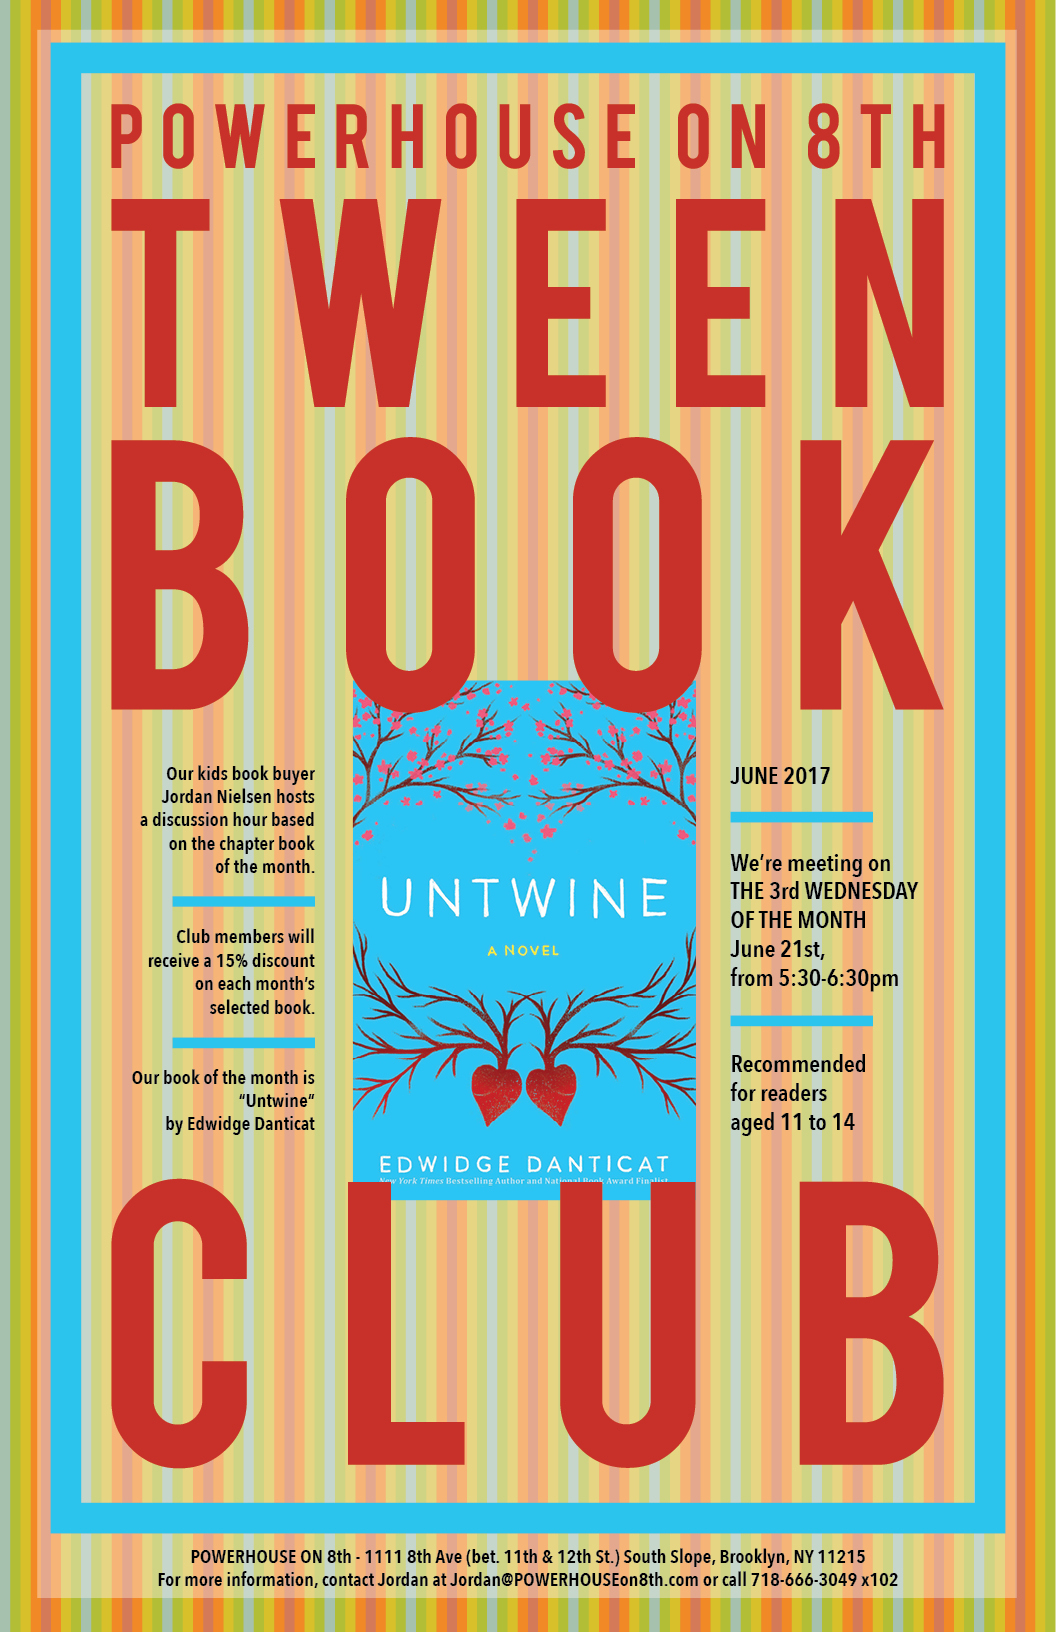 Tween Book Club: Untwine by Edwidge Danticat